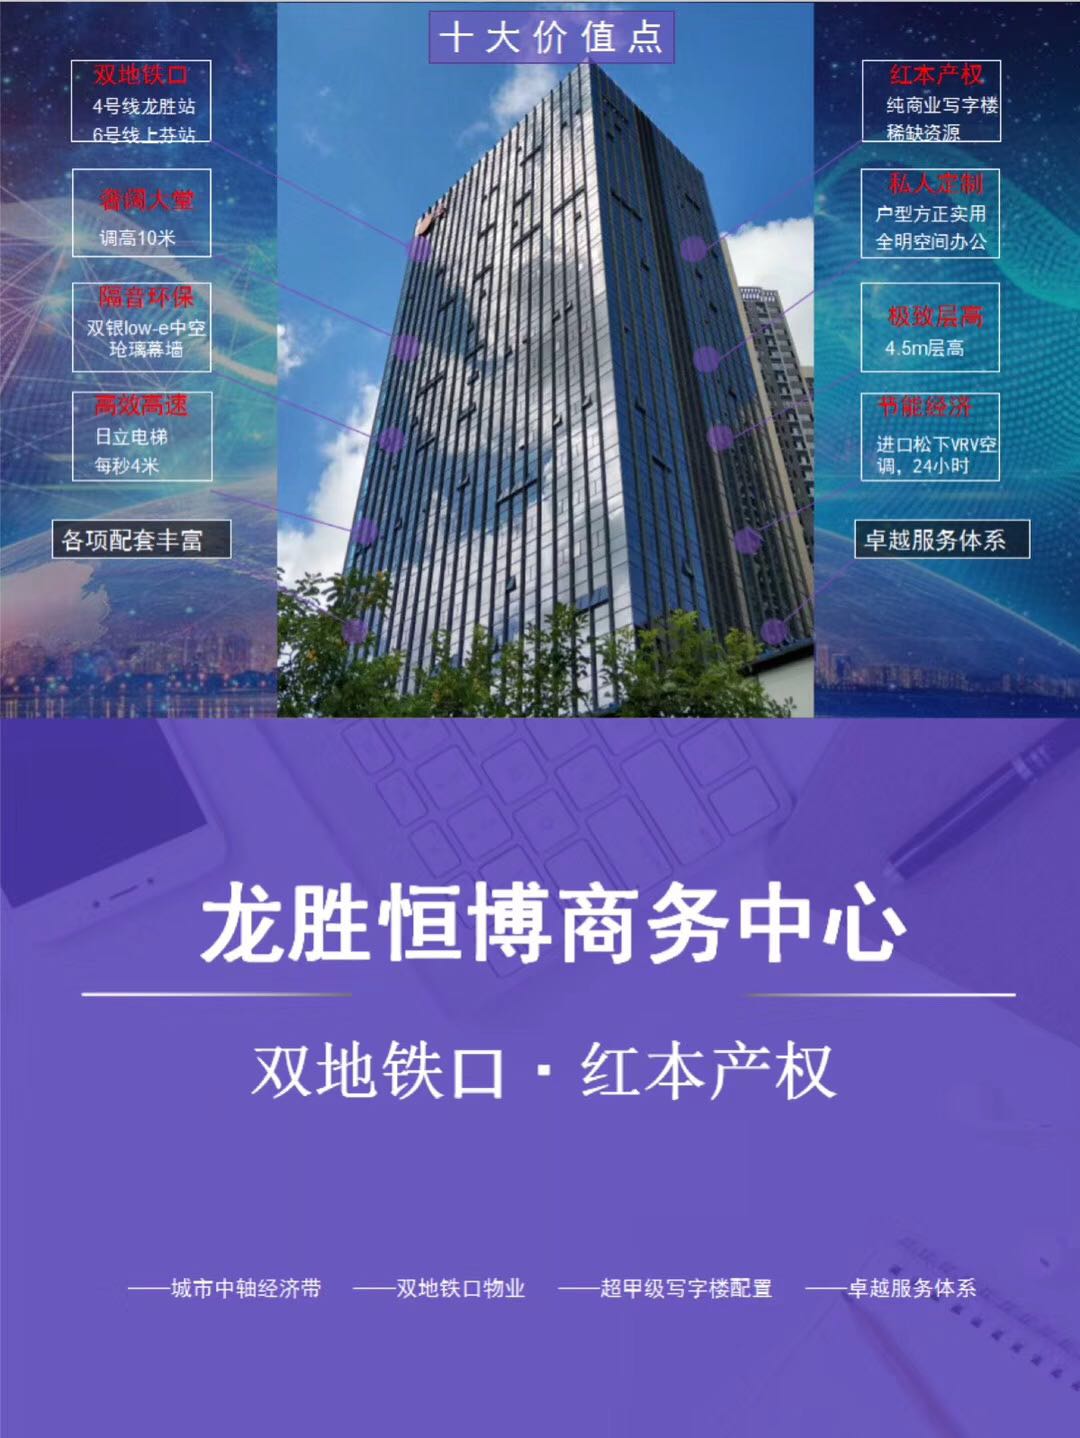 深圳龙胜地铁站龙胜恒博中心管理处